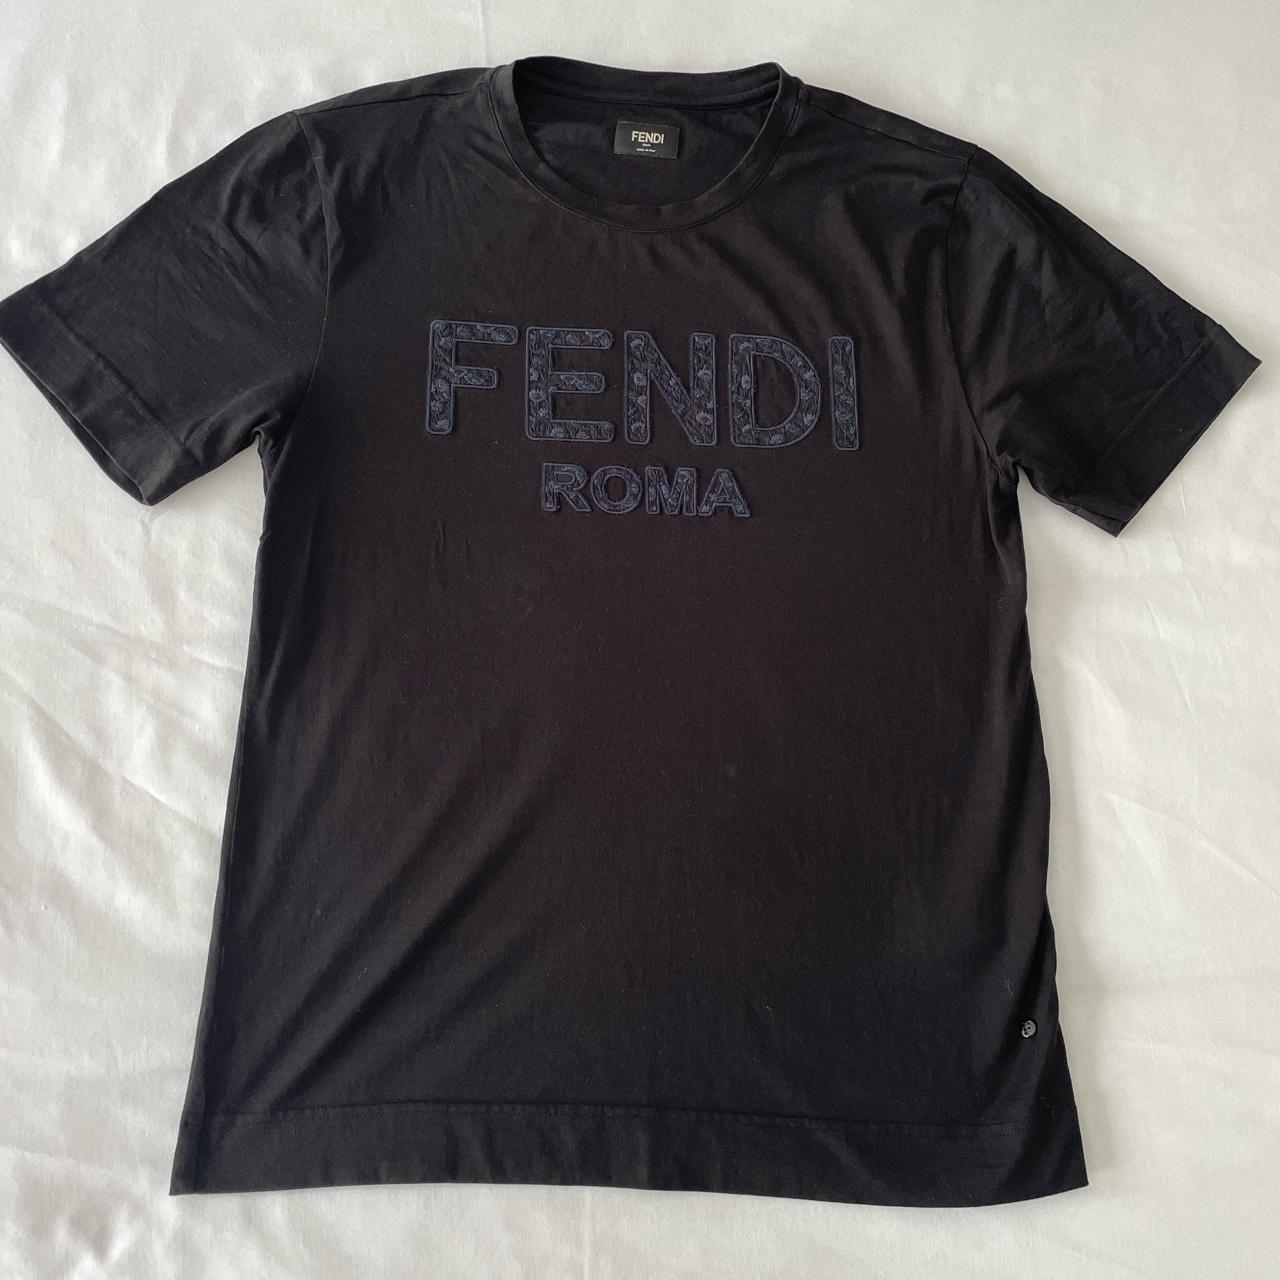 Fendi Roma t shirt will fit a small - Depop